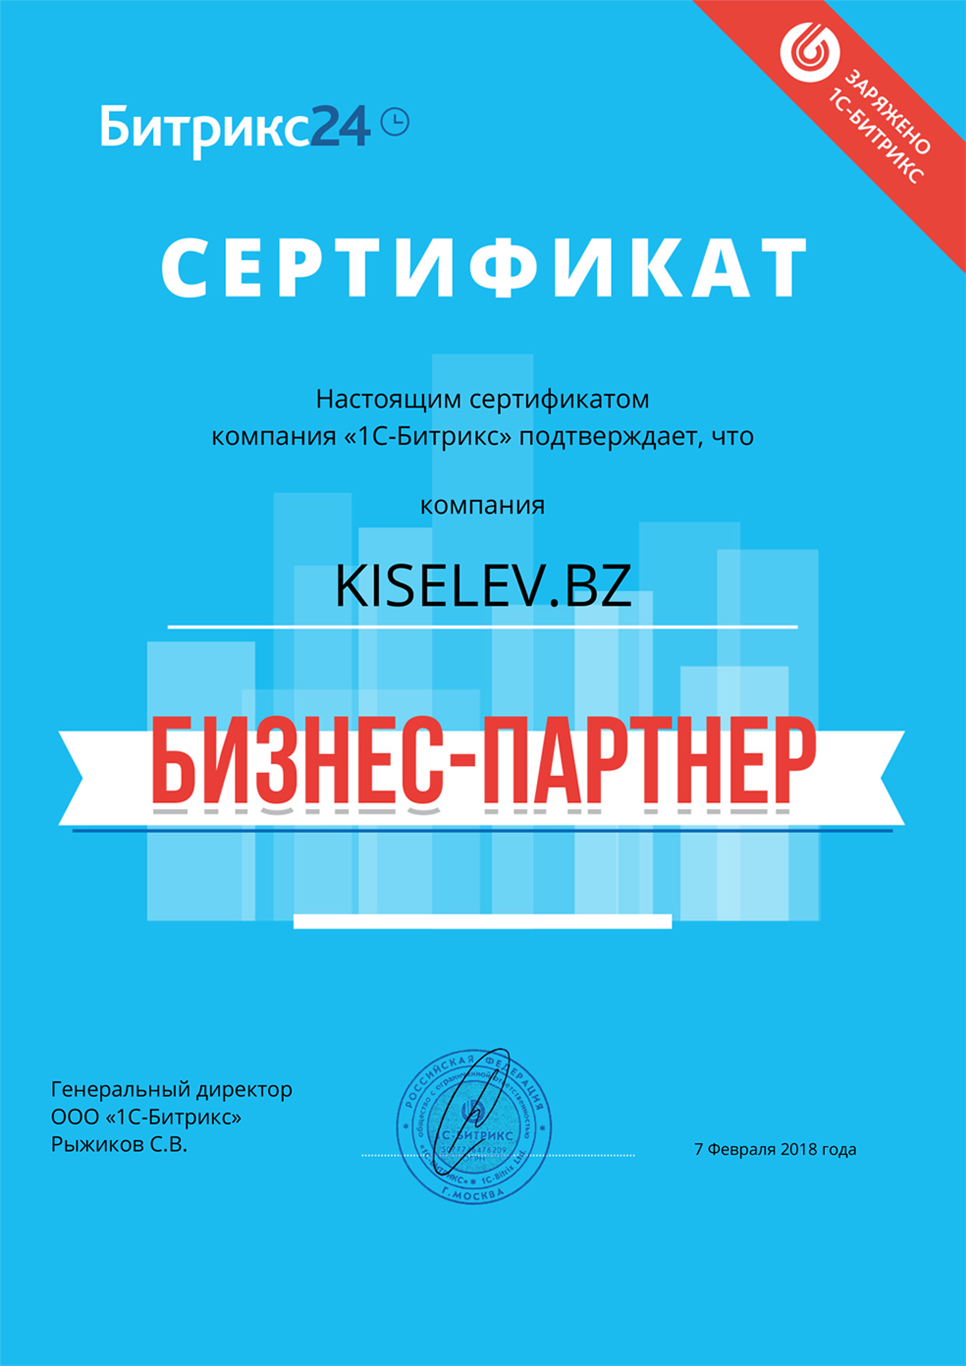 Сертификат партнёра по АМОСРМ в Усть-Катаве